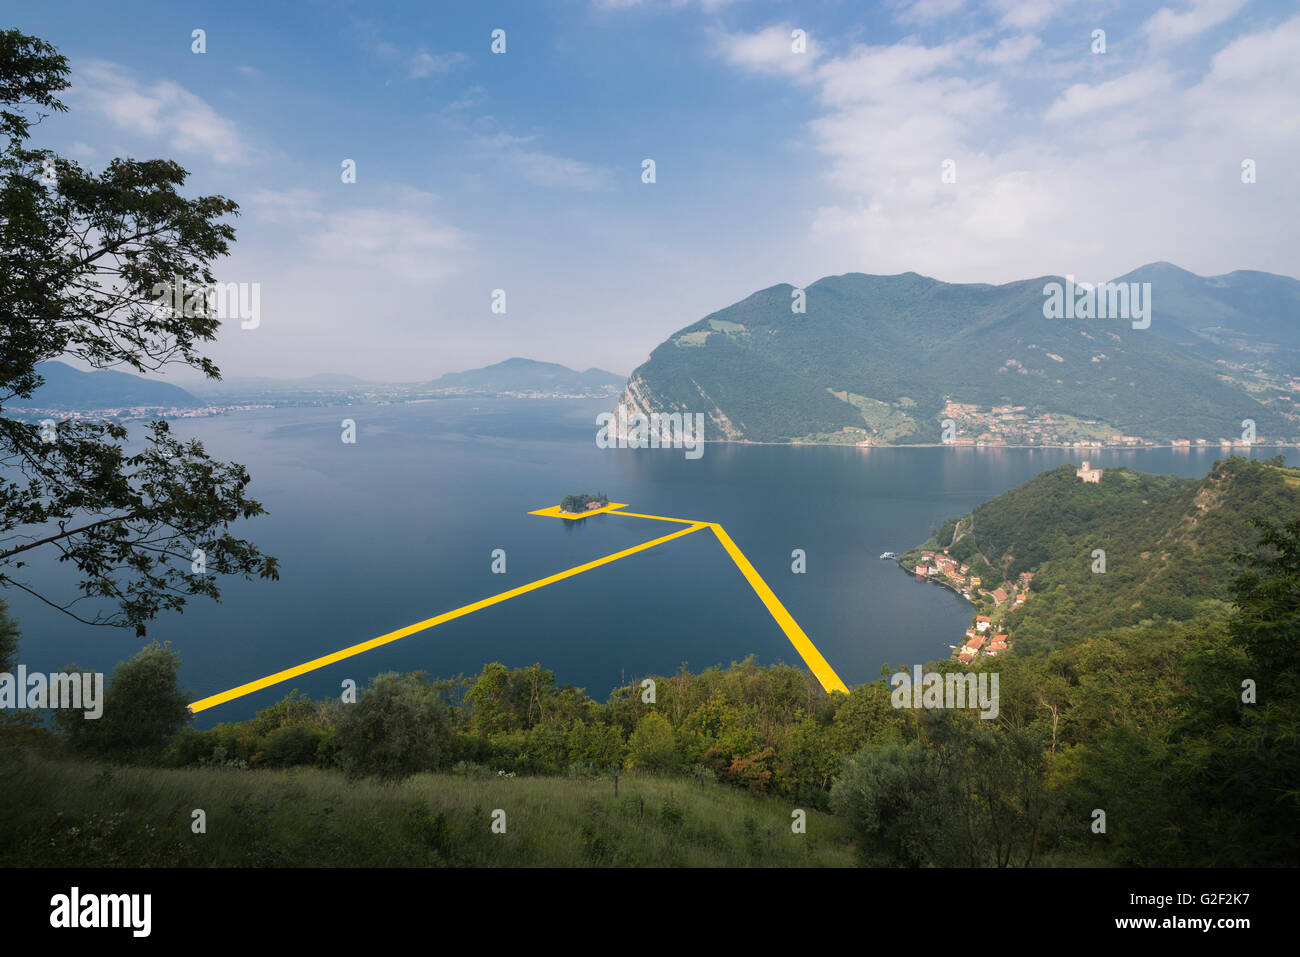 Piscine pontons sont placés entre les îles pour Christo's project 'Les quais flottants' sur le lac d'Iseo en Italie Banque D'Images